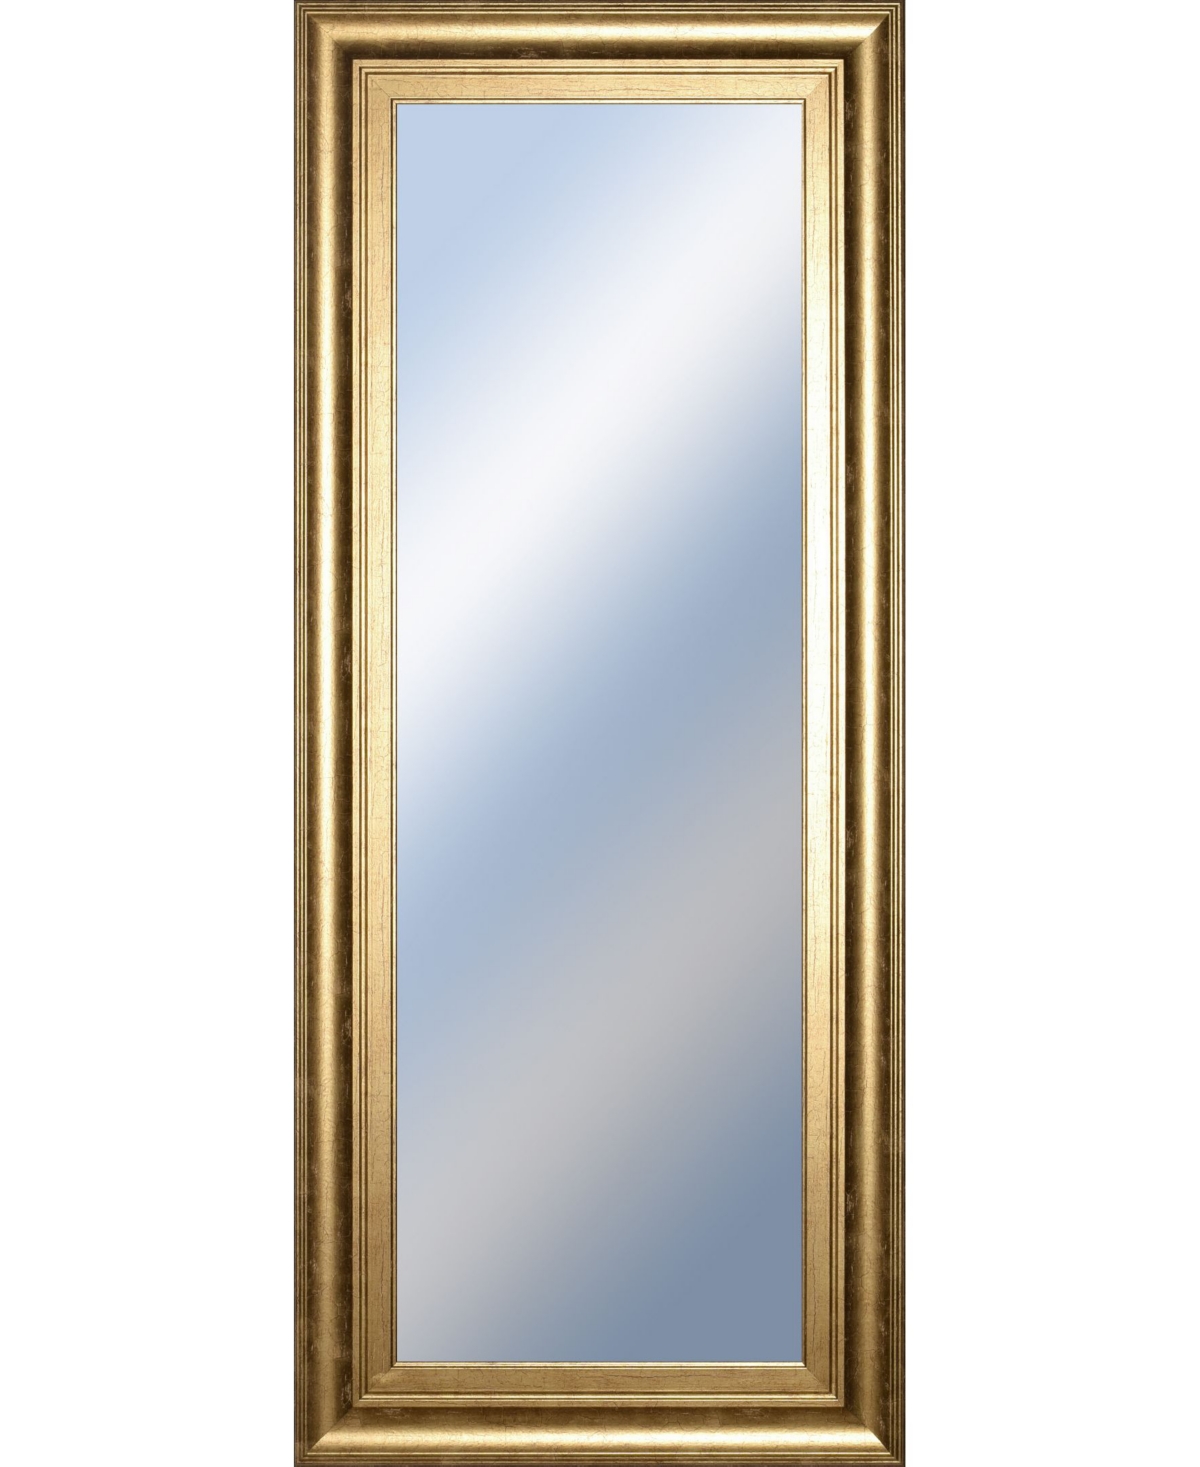 Decorative Framed Wall Mirror, 18" x 42" - Silver